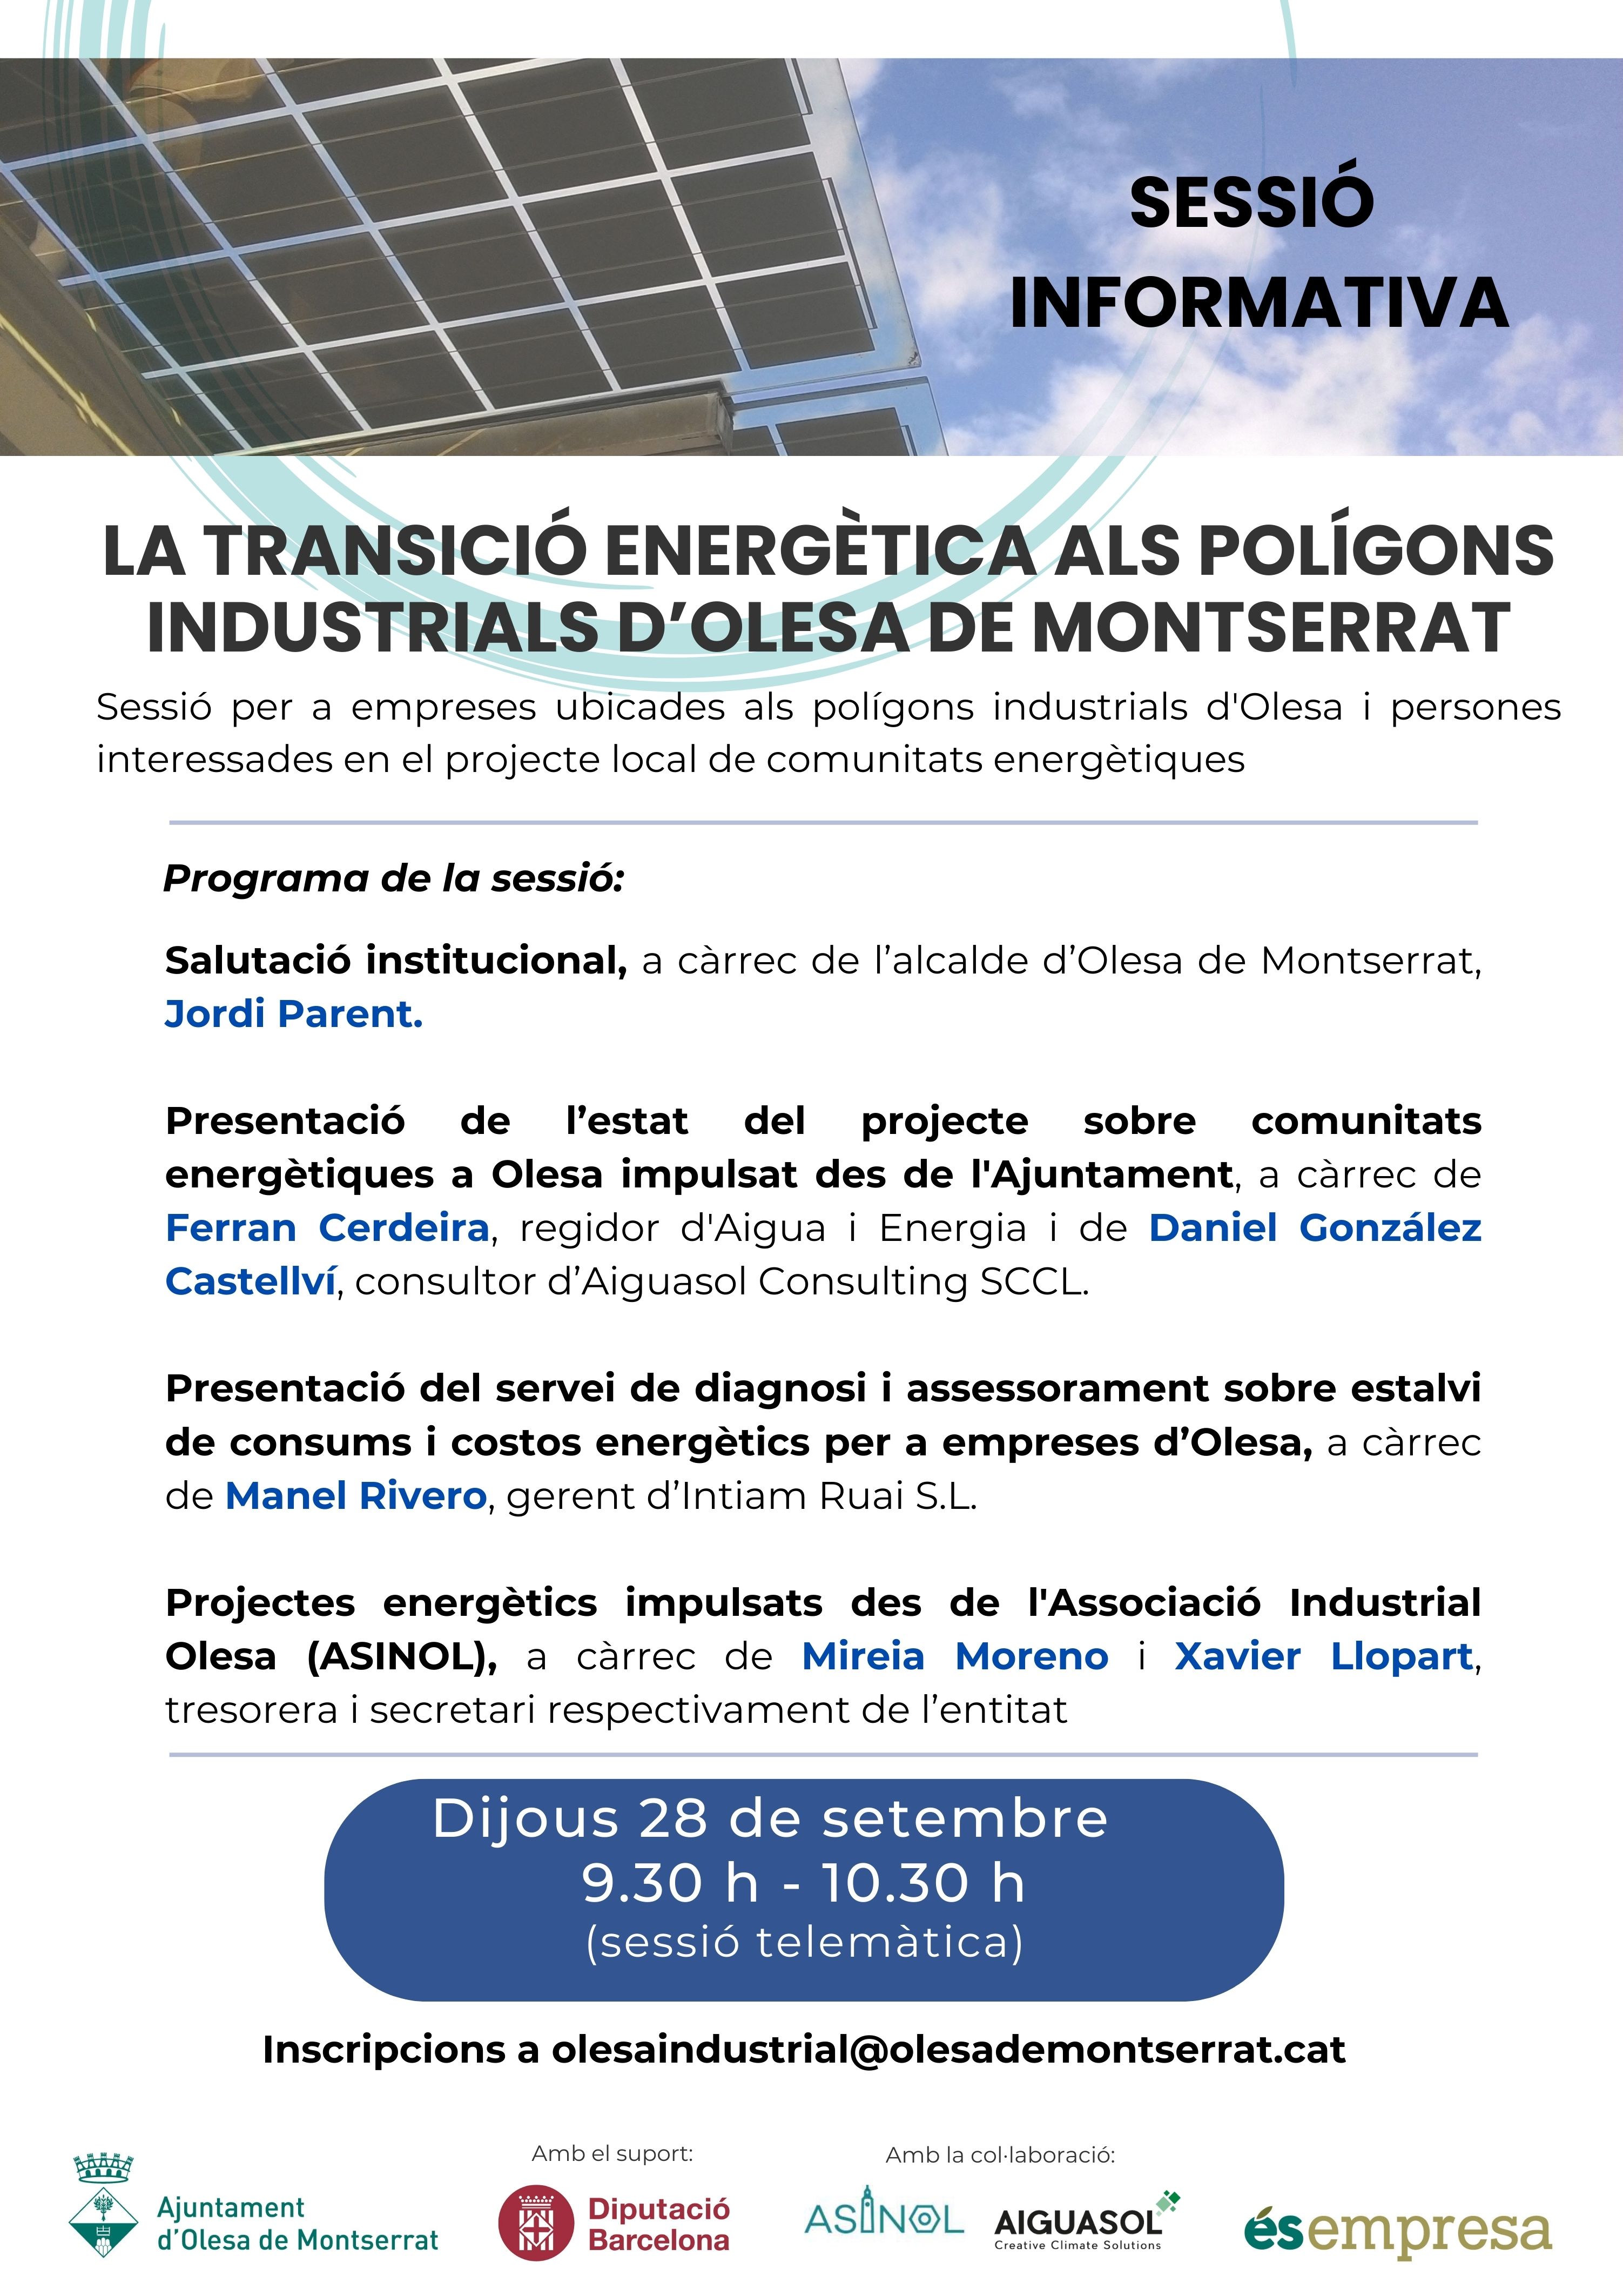 Sessió informativa La transició energètica als polígons industrials d'Olesa de Montserrat